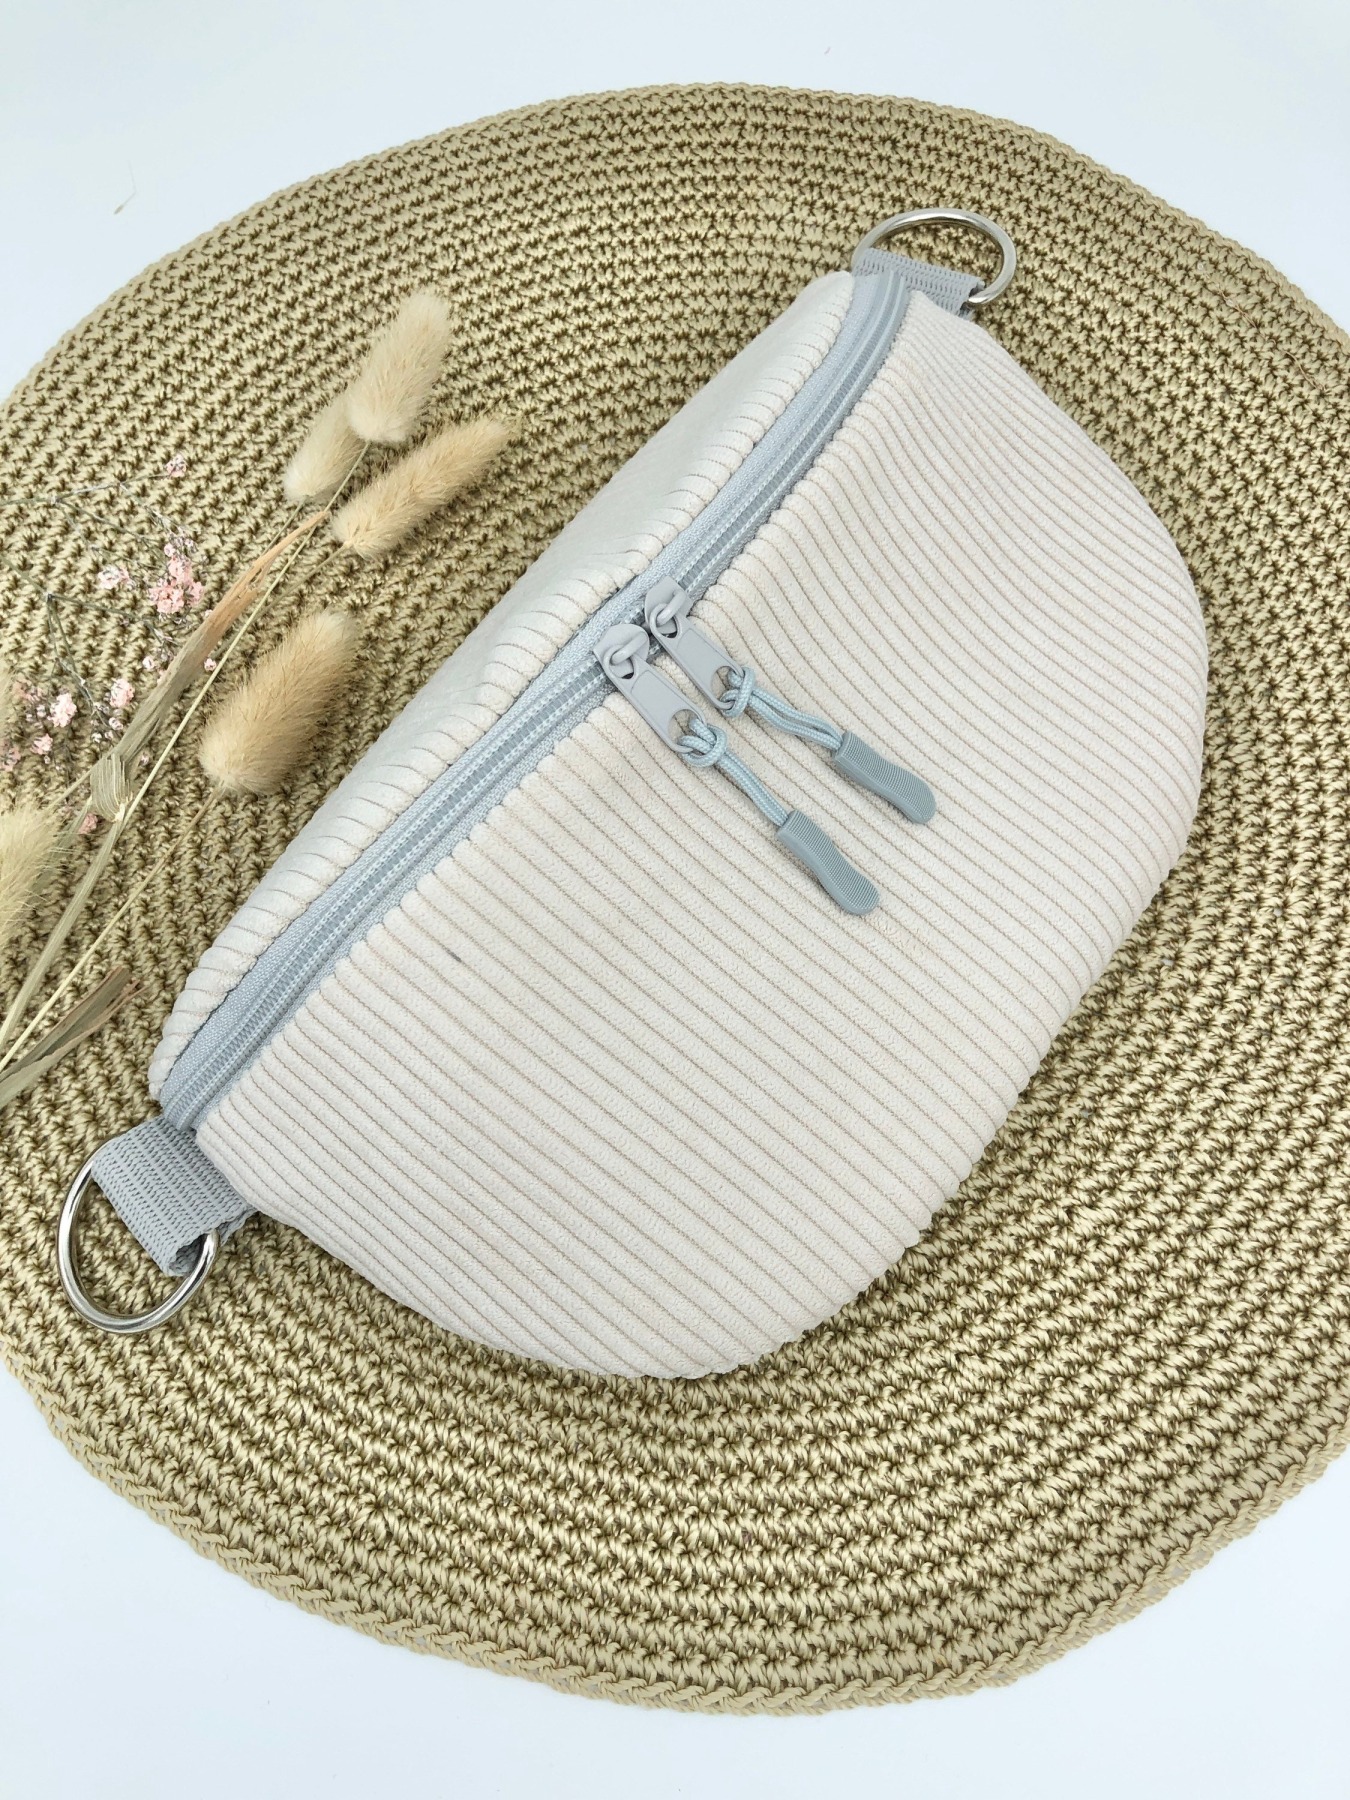 Bauchtasche, XL Crossbag Cord cremeweiß mit Taschengurt in beige weiß silber, Tasche, Hipbag,